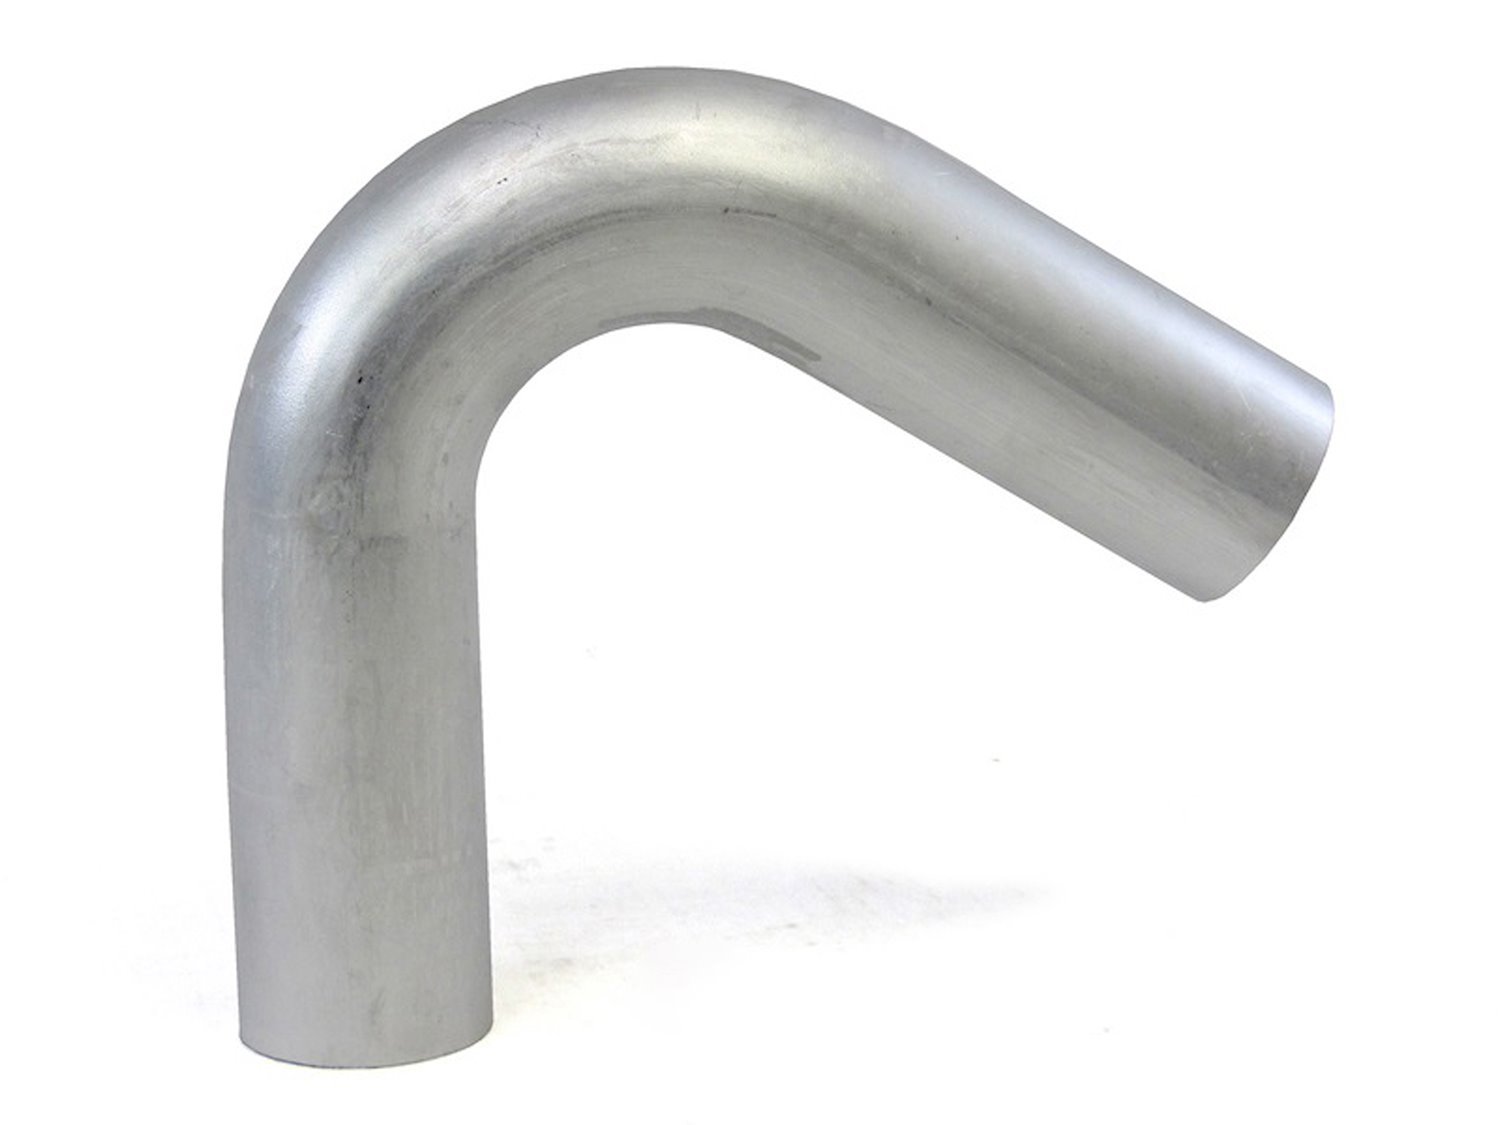 AT120-250-CLR-4 Aluminum Elbow Tube, 6061 Aluminum, 120-Degree Bend Elbow Tubing, 2-1/2 in. OD, Large Radius, 4 in. CLR